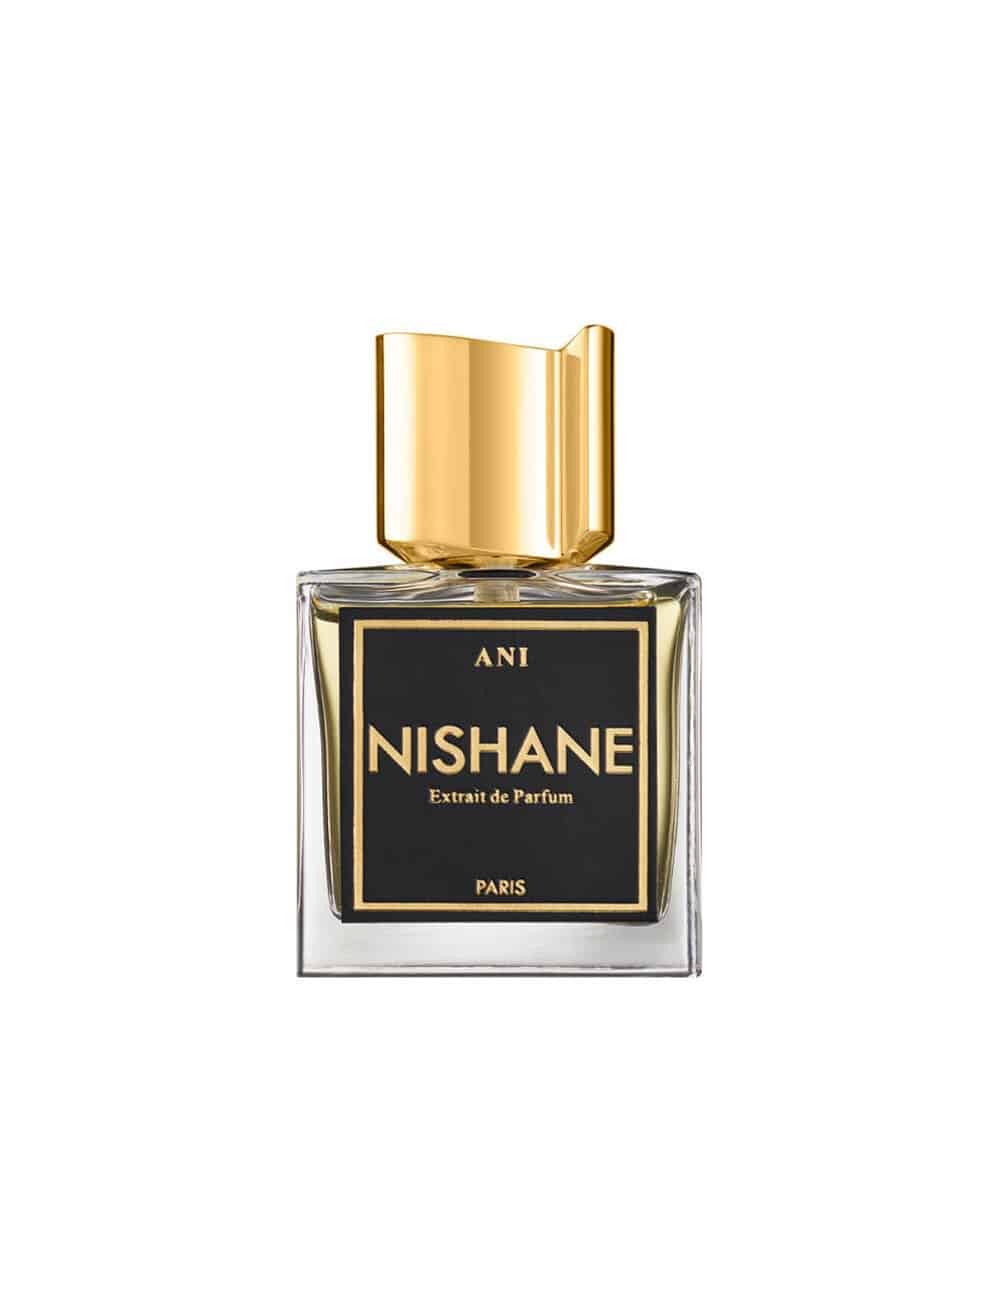 בושם יוניסקס נישאנה אני אקסטריט דה פרפיום 50 מל Nishane Ani Extrait de Parfum 50 ml